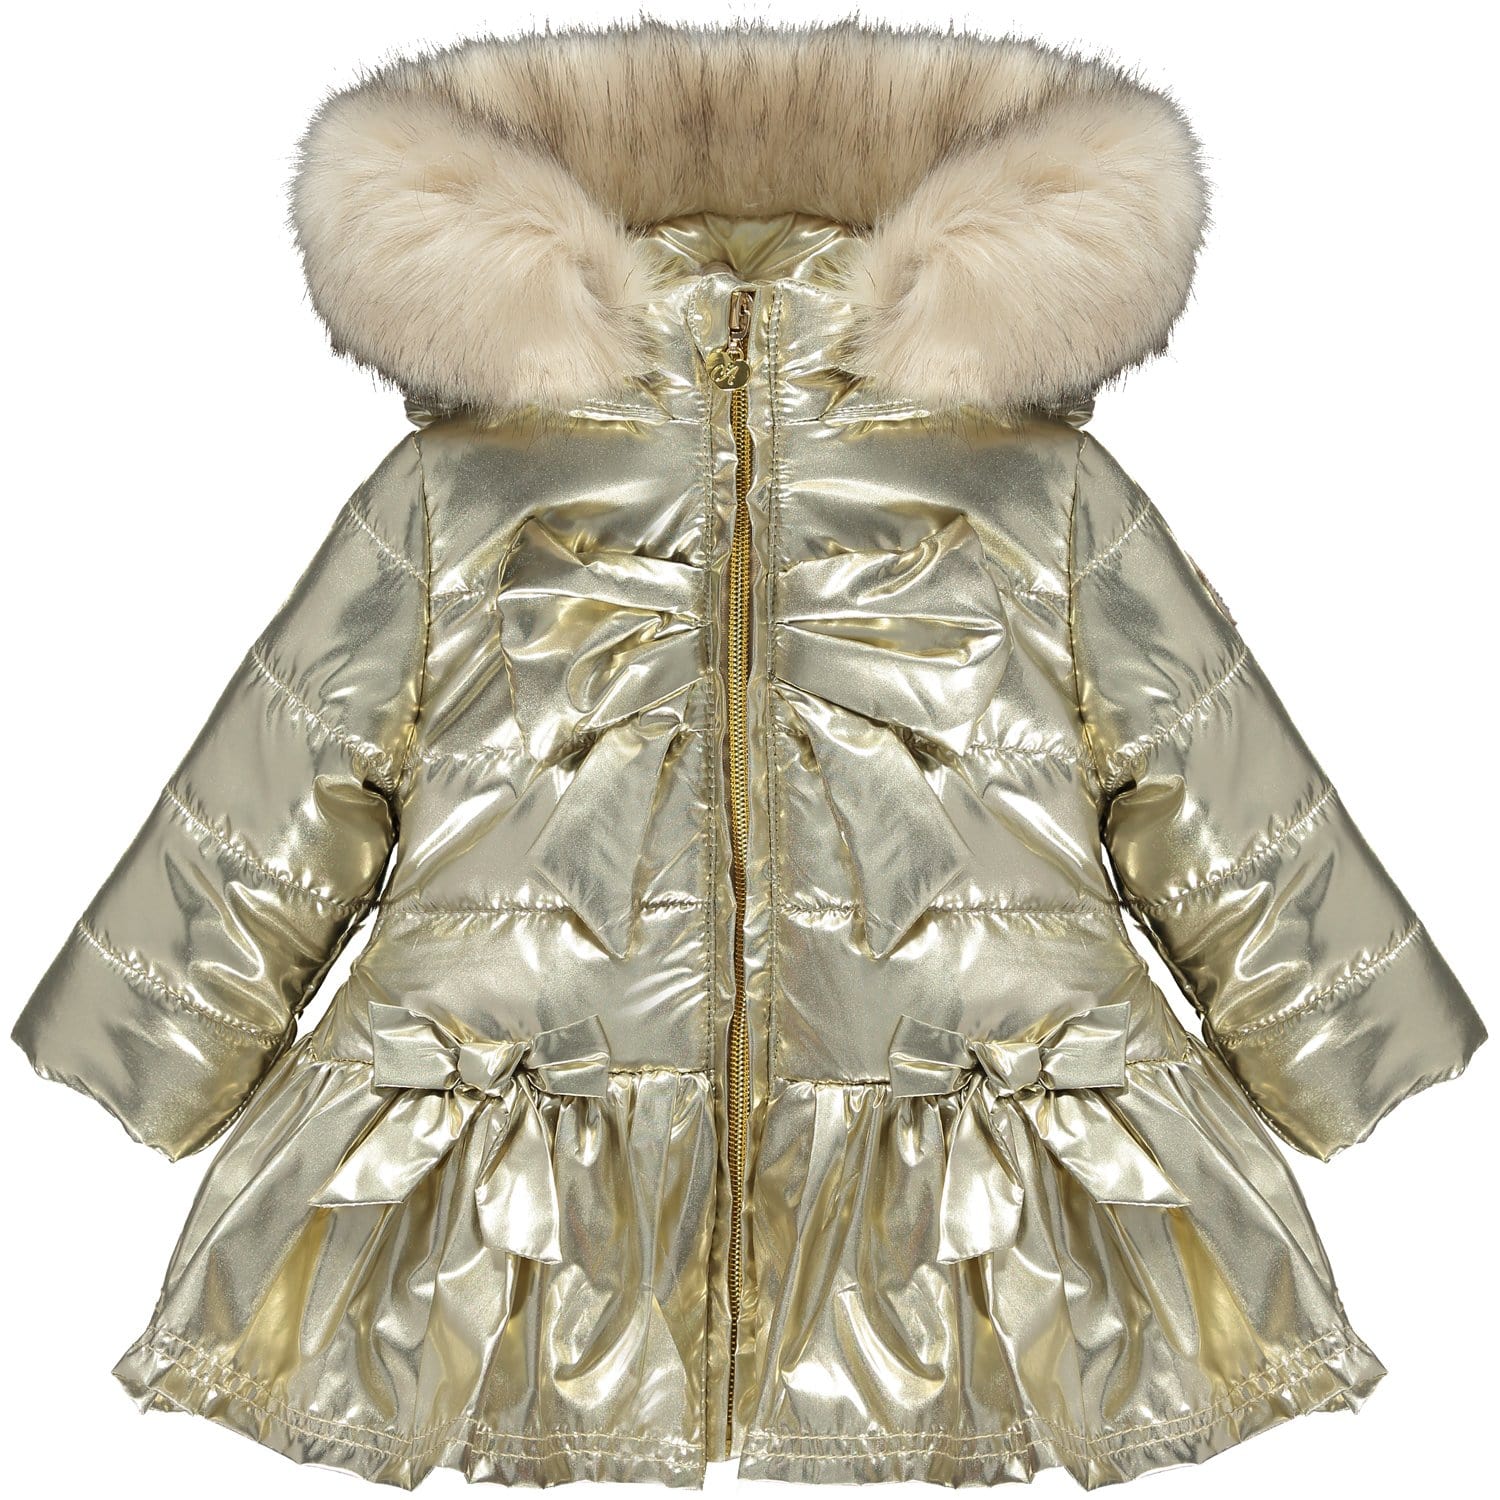 LITTLE A - Bow Faux Fur Trim Jacket - Gold